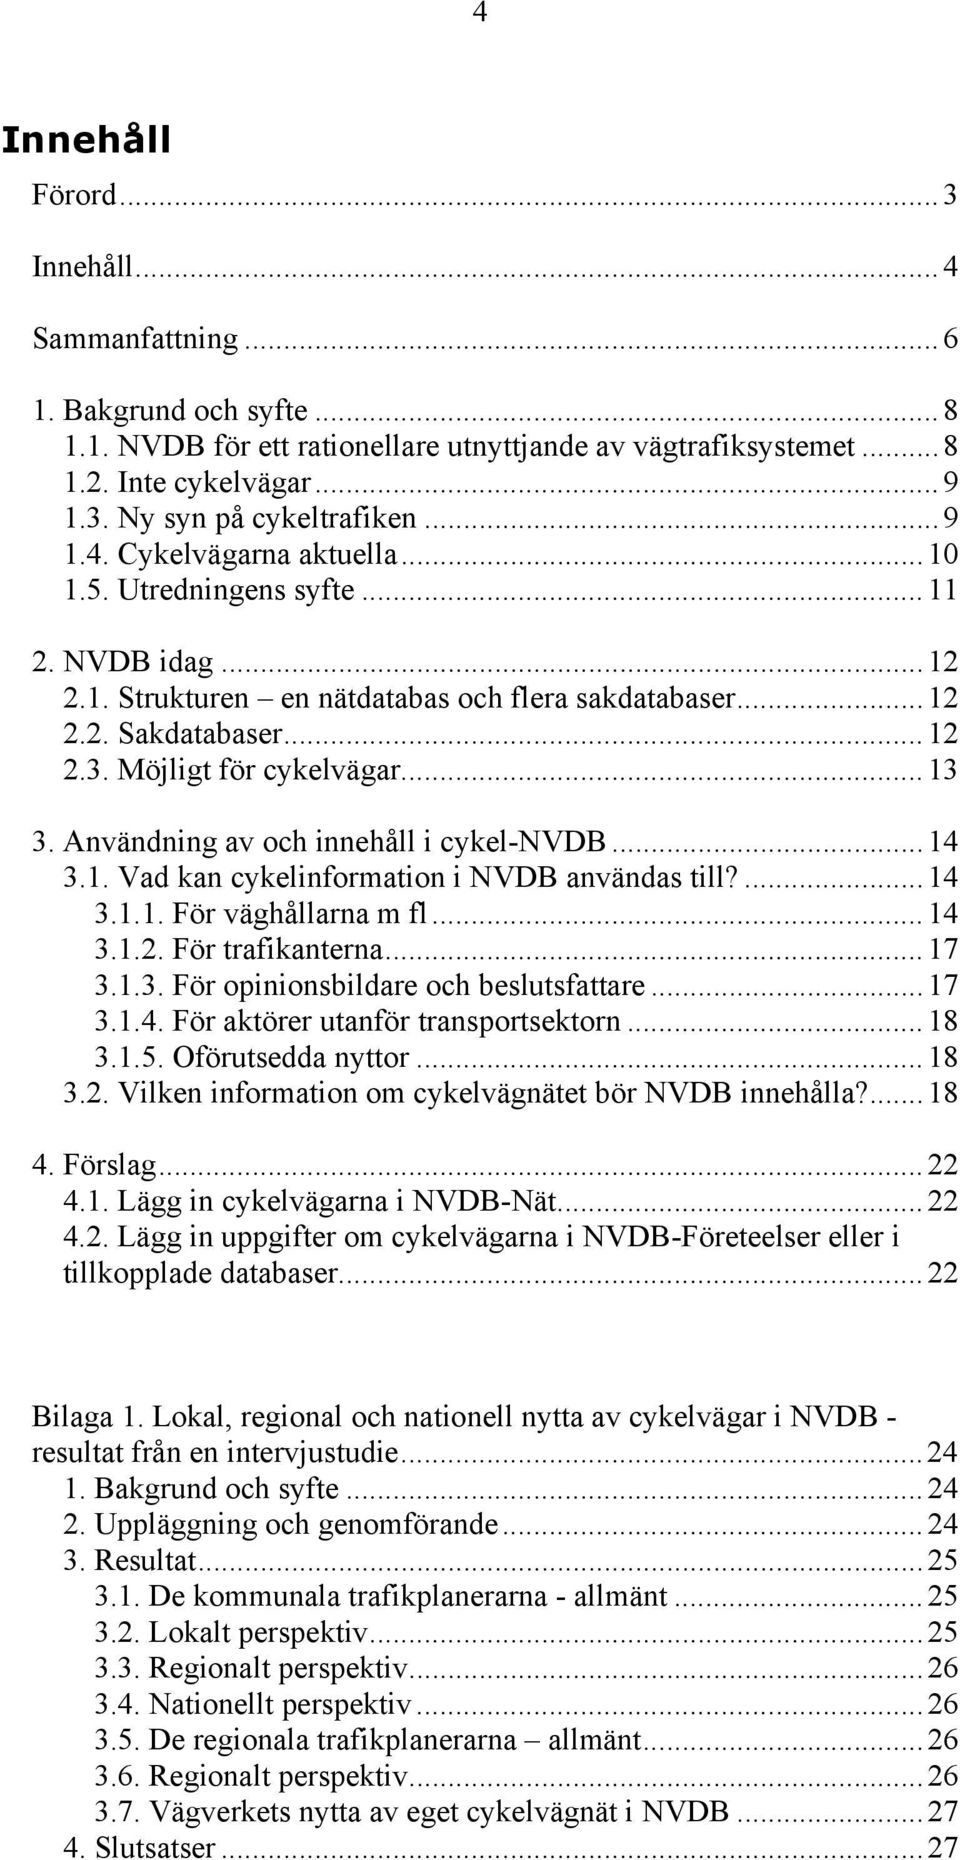 Användning av och innehåll i cykel-nvdb...14 3.1. Vad kan cykelinformation i NVDB användas till?...14 3.1.1. För väghållarna m fl...14 3.1.2. För trafikanterna...17 3.1.3. För opinionsbildare och beslutsfattare.